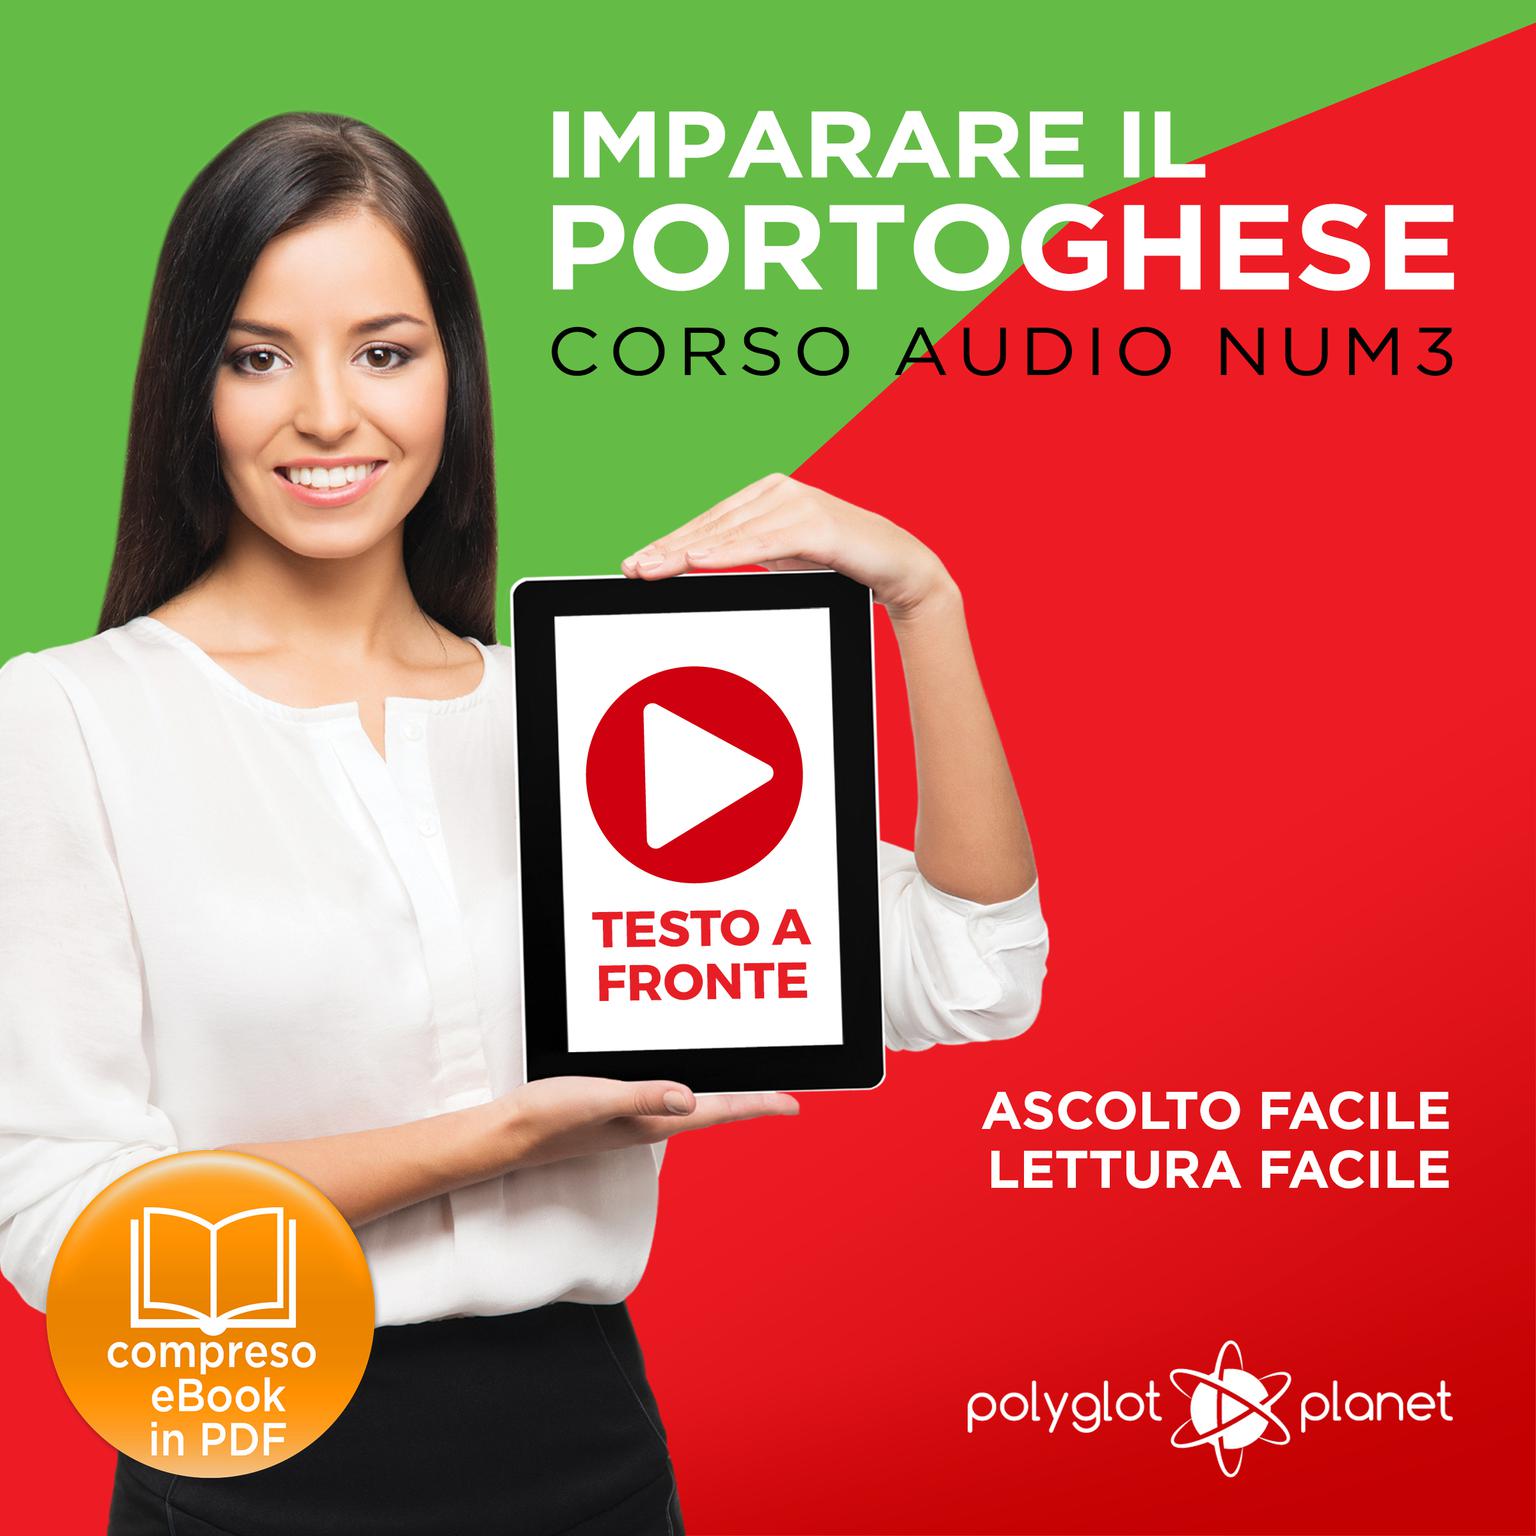 Imparare il Portoghese - Lettura Facile - Ascolto Facile - Testo a Fronte: Portoghese Corso Audio Num.3 [Learn Portuguese - Easy Reader - Easy Audio] Audiobook, by Polyglot Planet